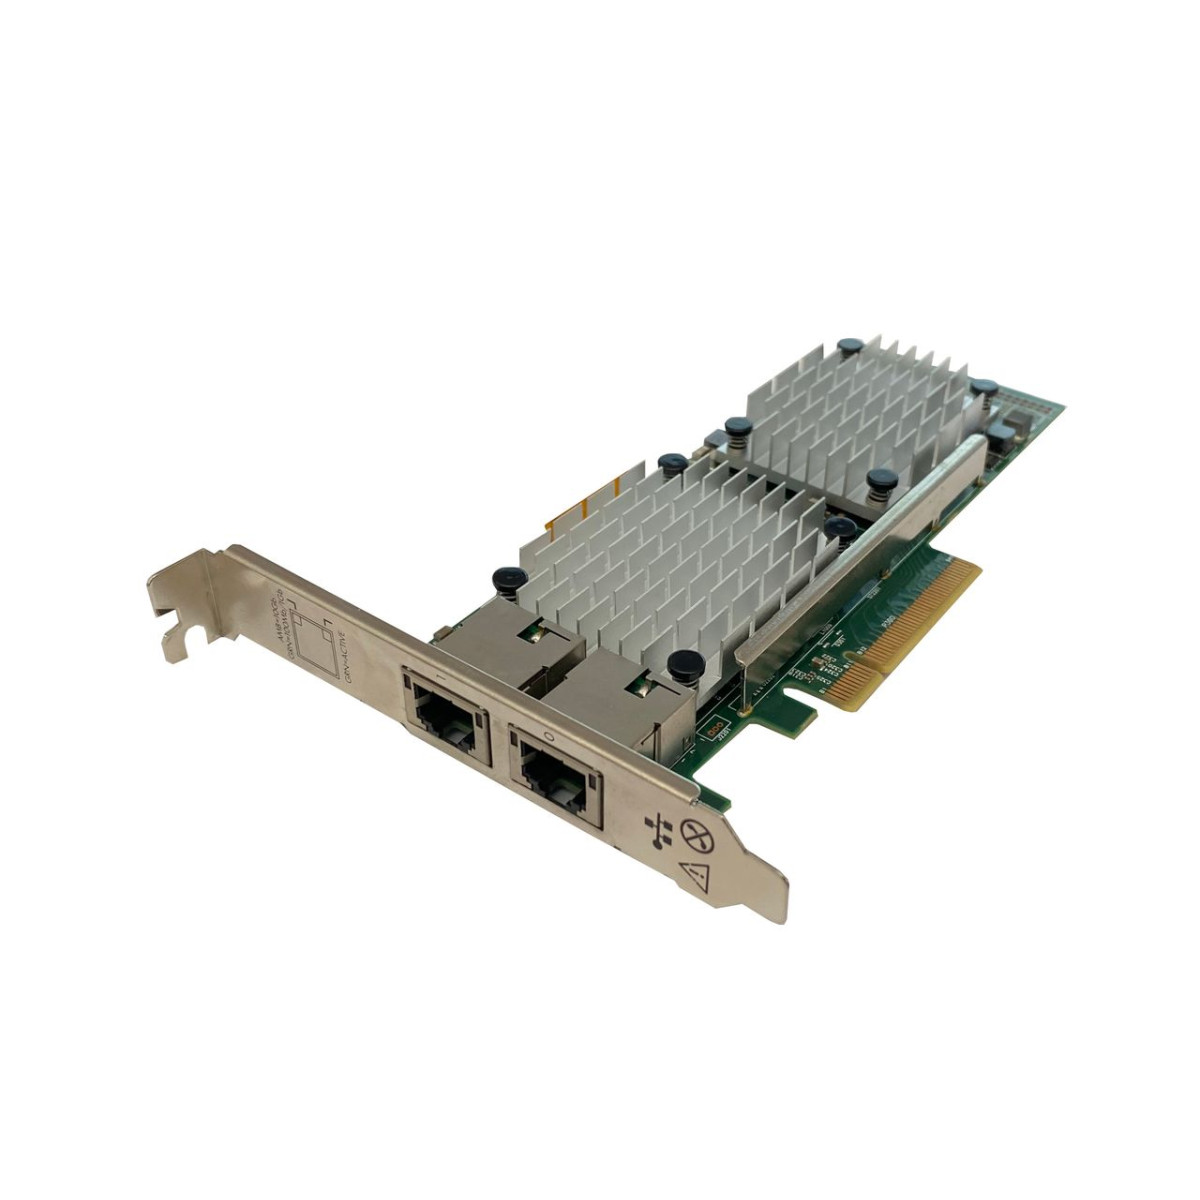 KARTA SIECIOWA HP 530T 2x10GBE RJ-45 PCIe FULL PROFILE 656594-001